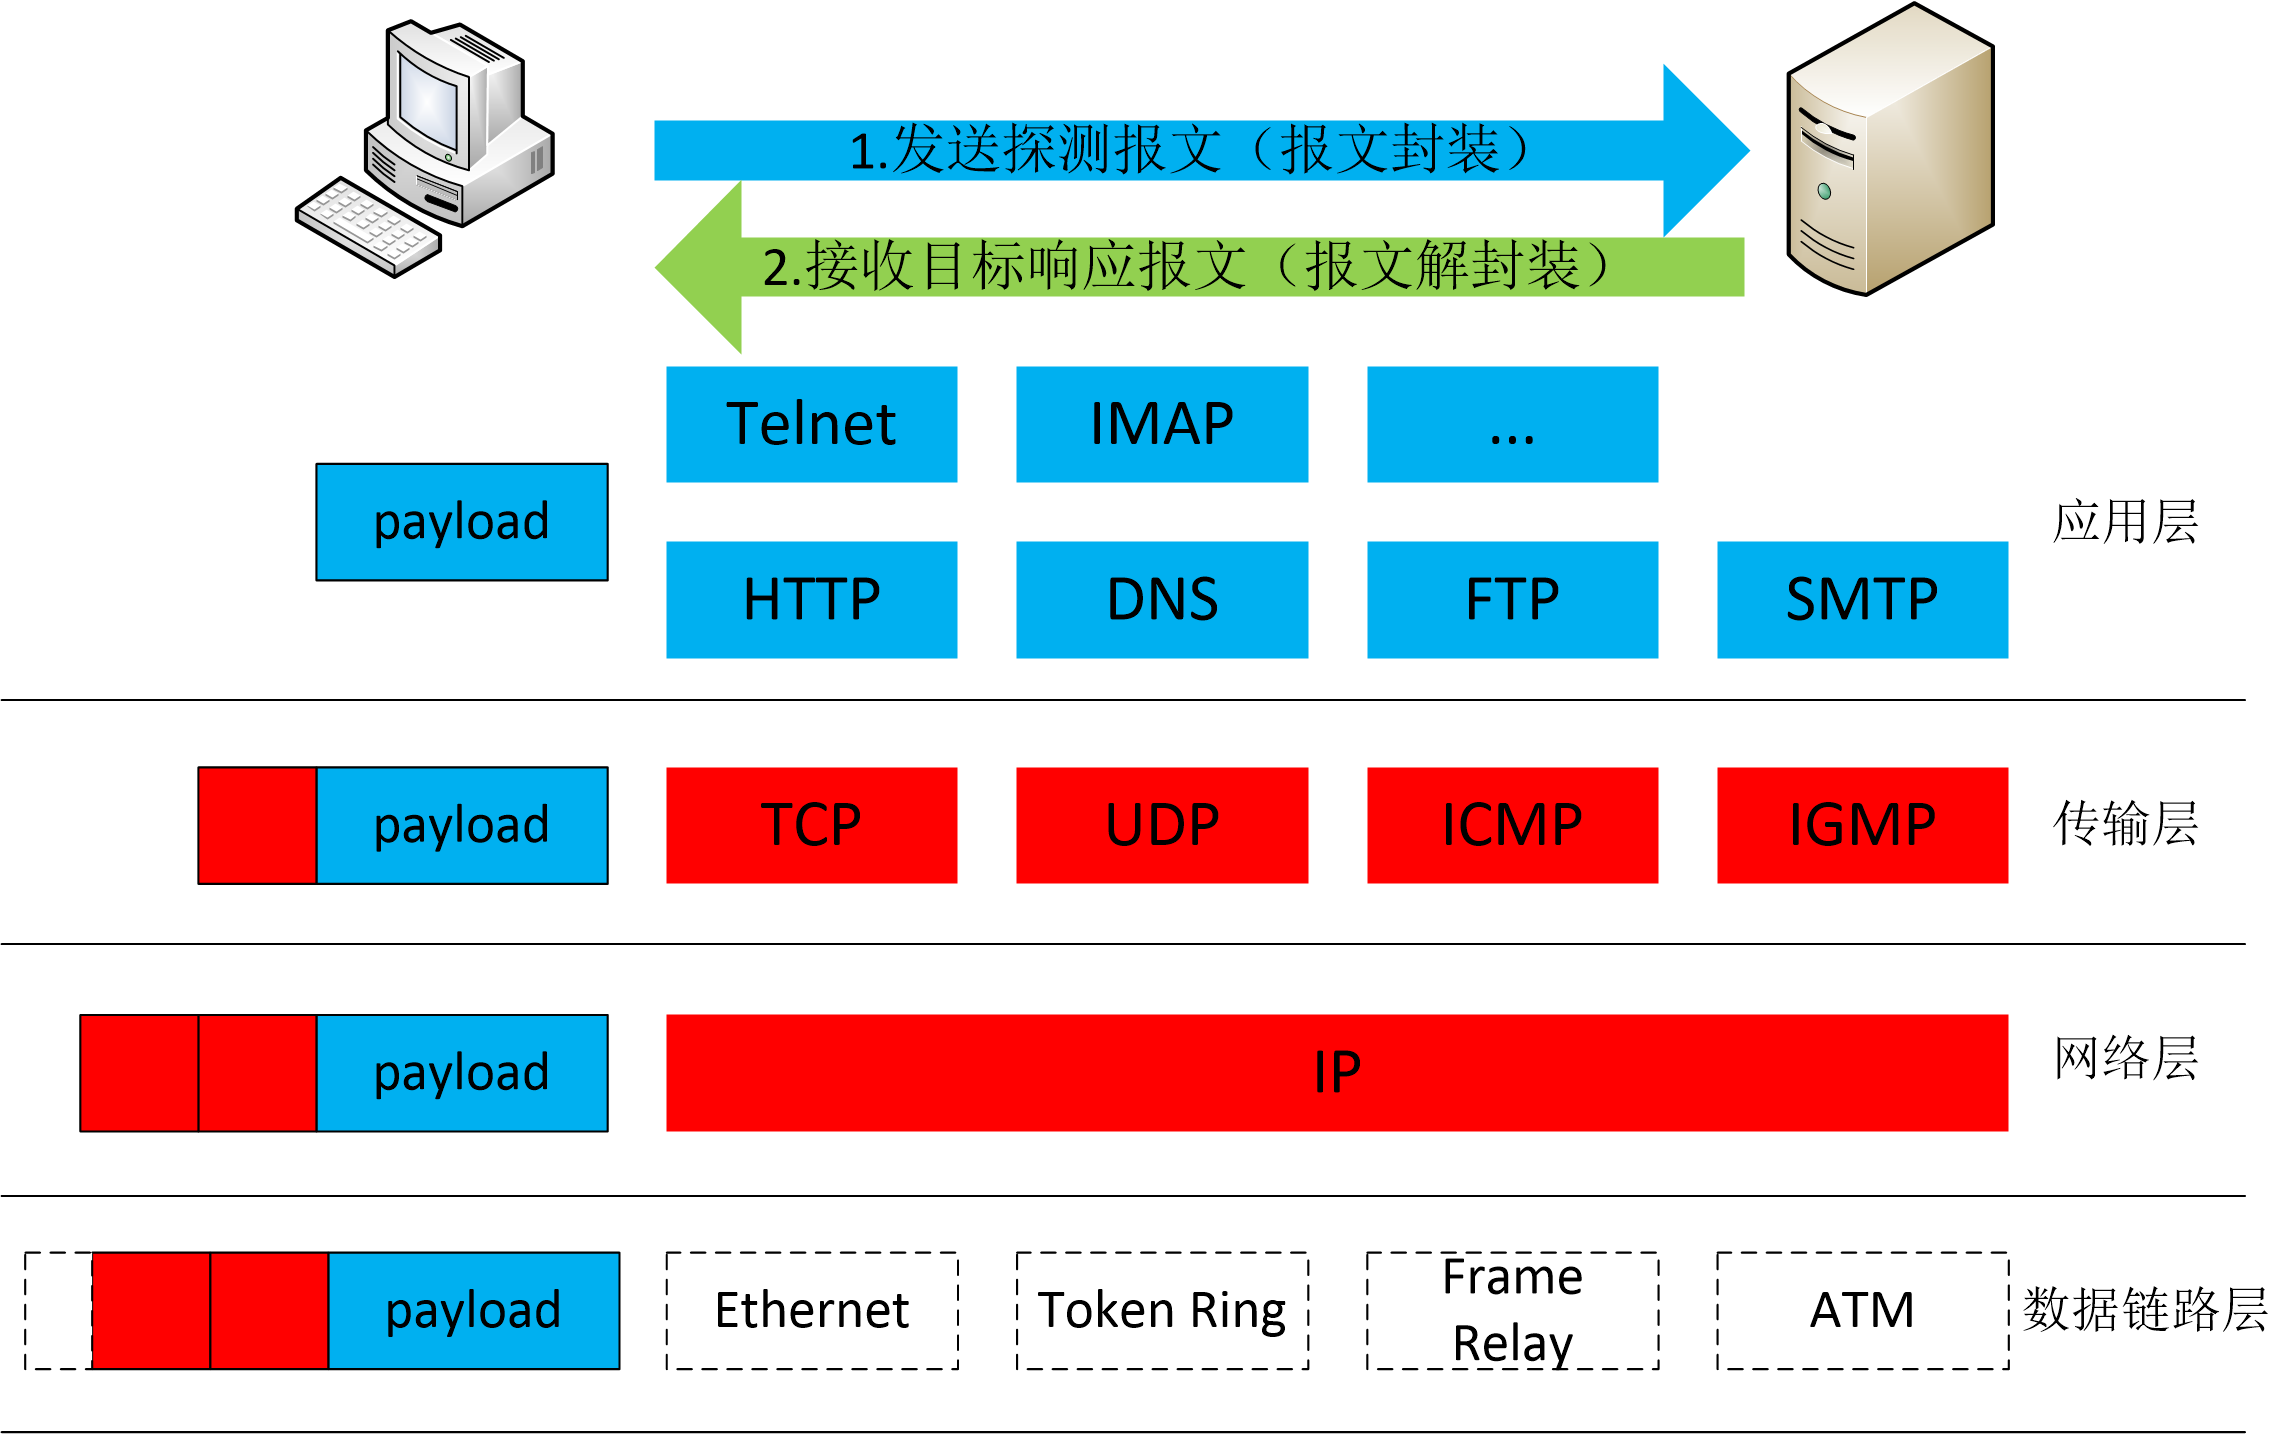 图 5-2 TCP/IP 协议栈标准